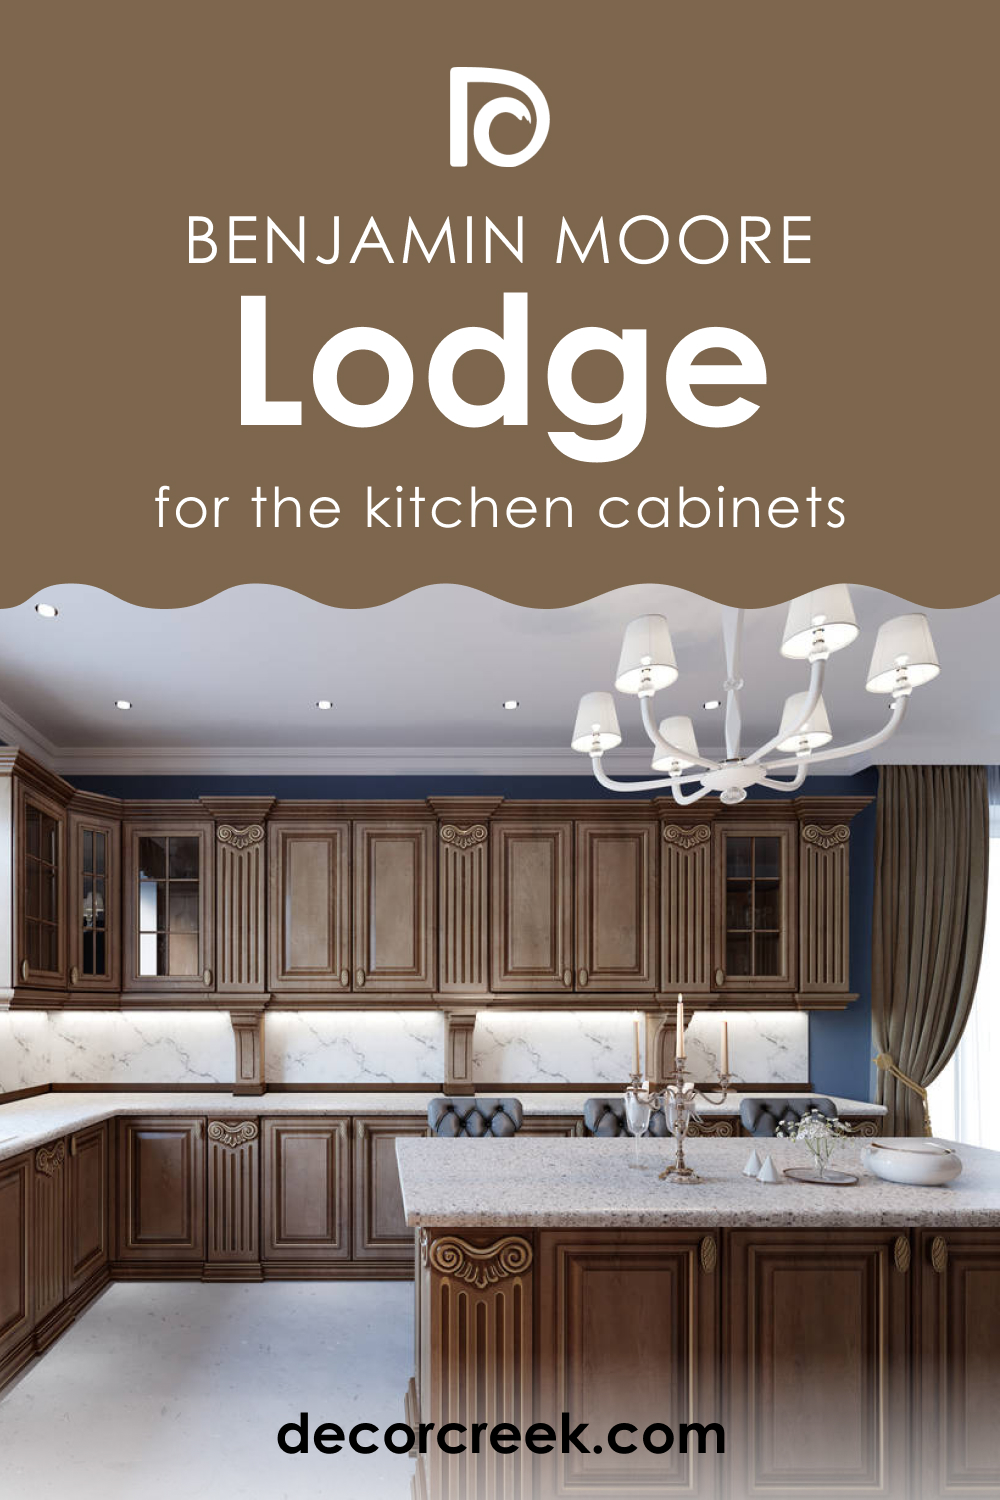 Lodge AF-115 On Kitchen Cabinets